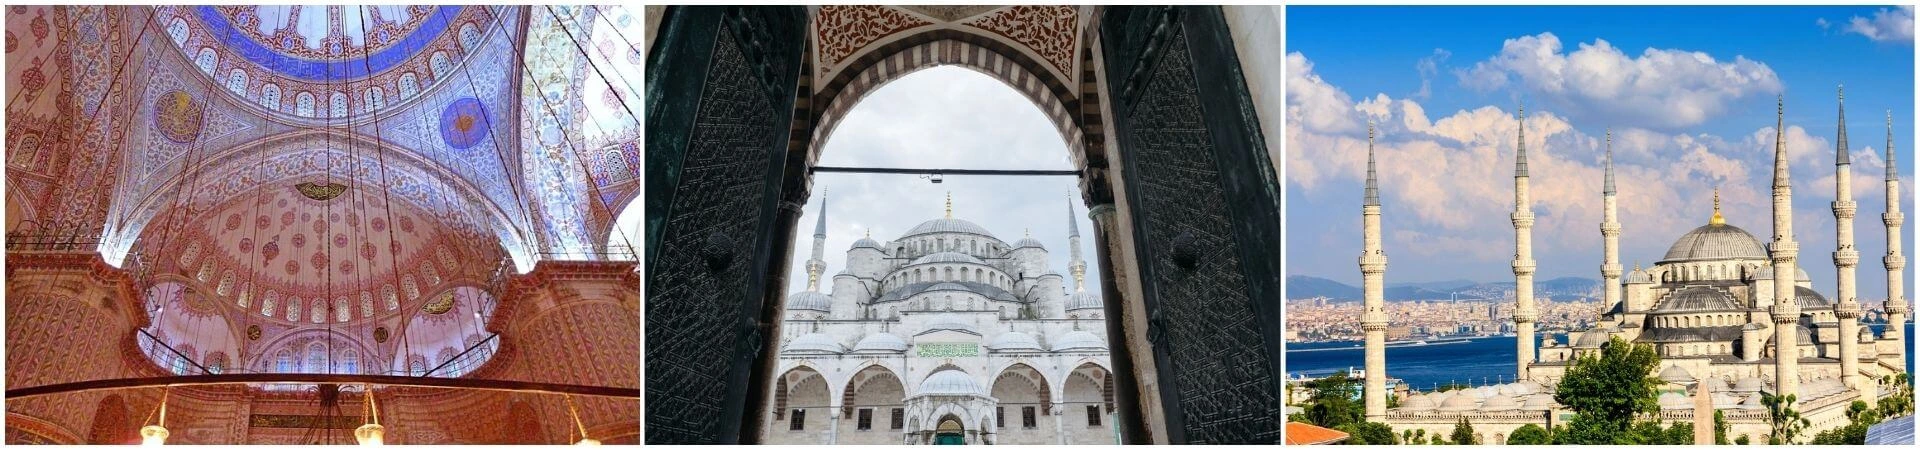 Экскурсия по Голубой мечети в Стамбуле